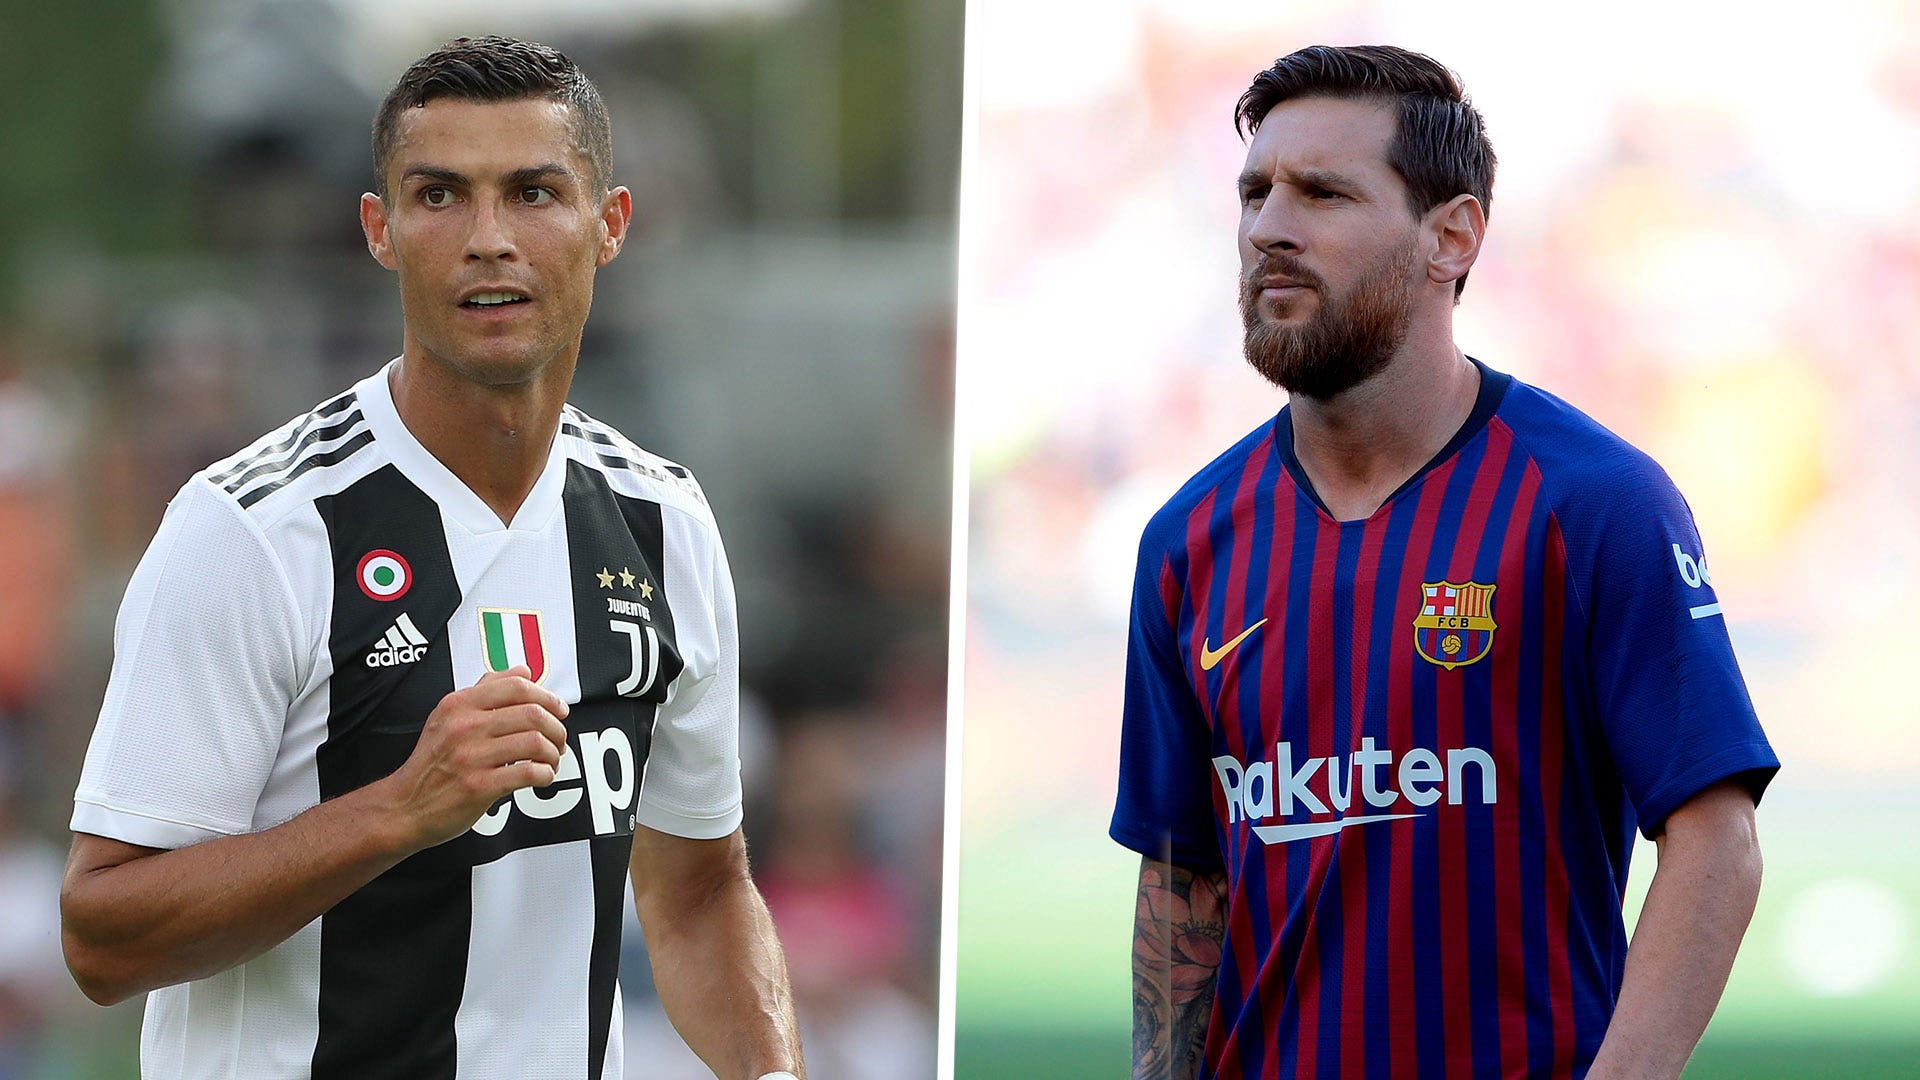 Ronaldo và Messi đều có vẻ đẹp riêng của mình. Hãy chiêm ngưỡng bộ sưu tập độc đáo về sự so sánh về vẻ đẹp giữa hai siêu sao này và tìm thấy sự khác biệt giữa họ nhé!